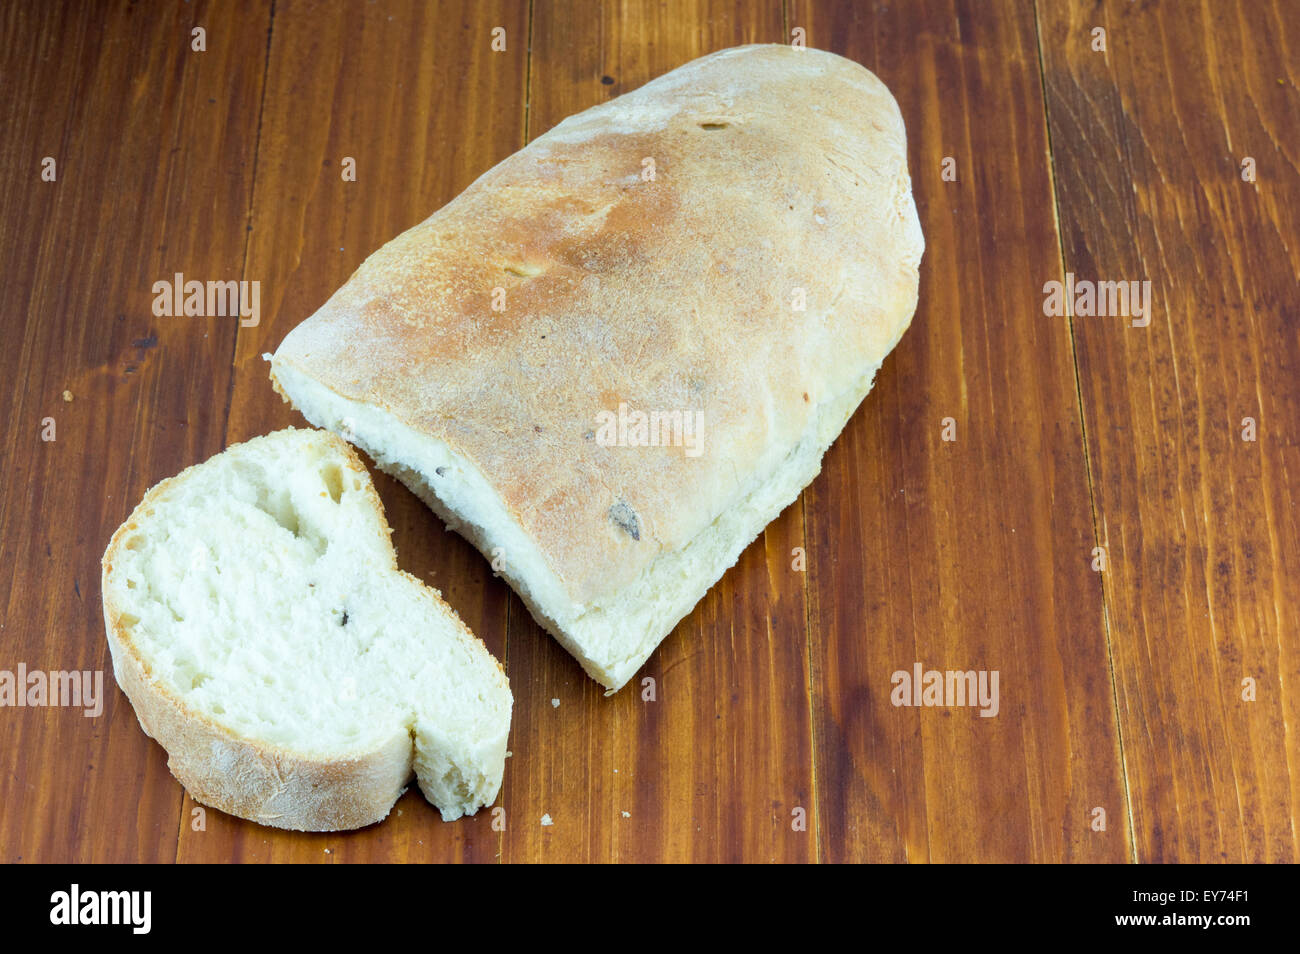 Couper du pain sur une table Banque D'Images